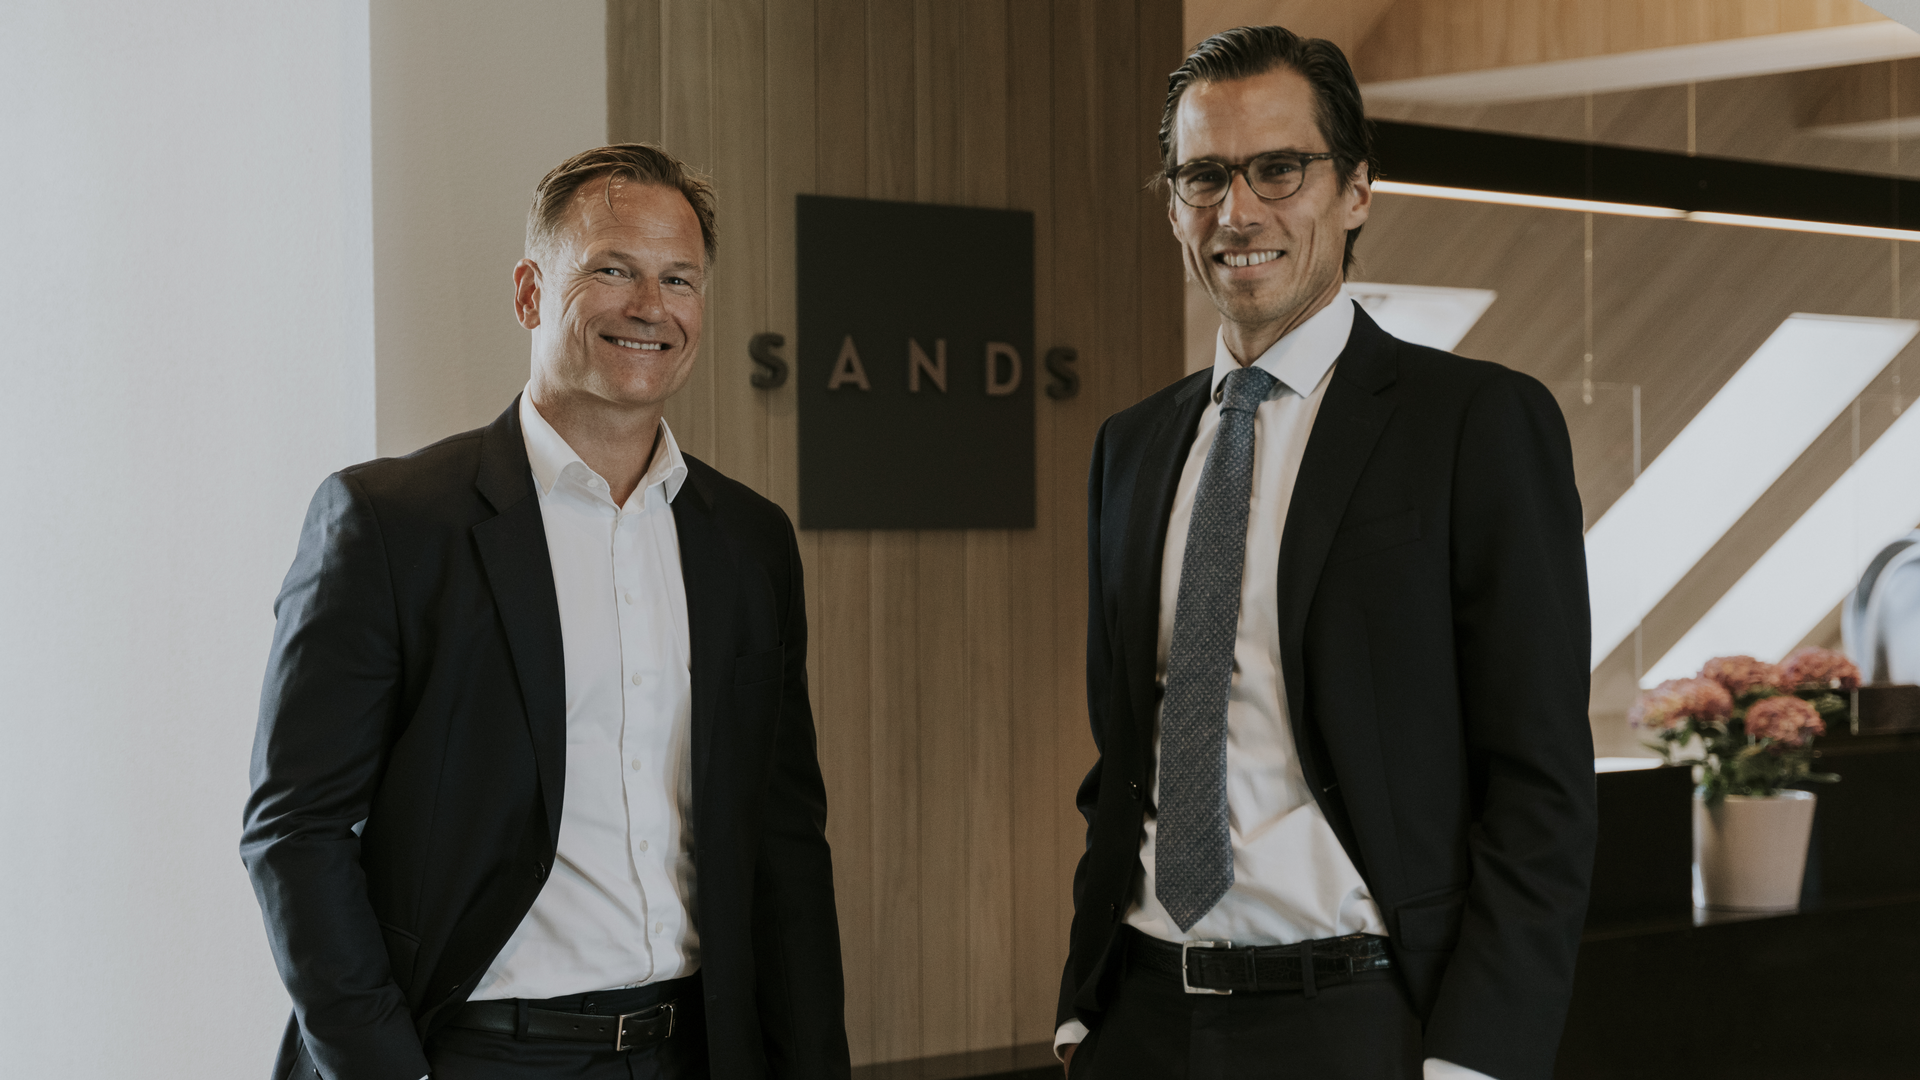 EIENDOMSADVOKATER: Børge Nygårdshaug (t.v.) blir nå partner i Sands, hvor Christian Hartmann leder avdelingen for næringseiendom. | Foto: Mari Gjørv Berge / Sands